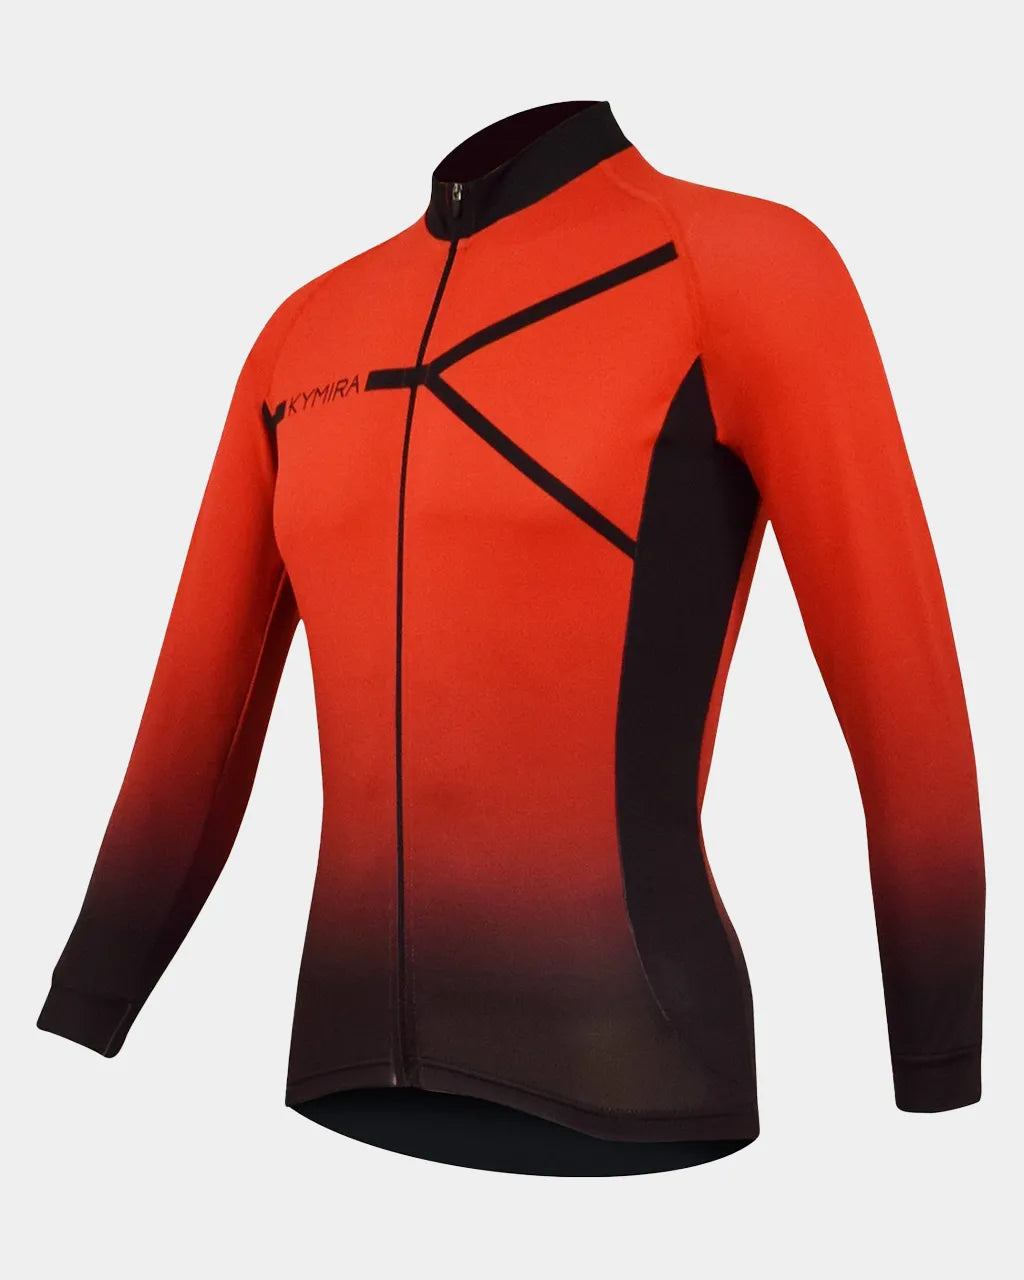 KYMIRA PR02 Infrared Long Sleeve Cycling Jersey - Men's